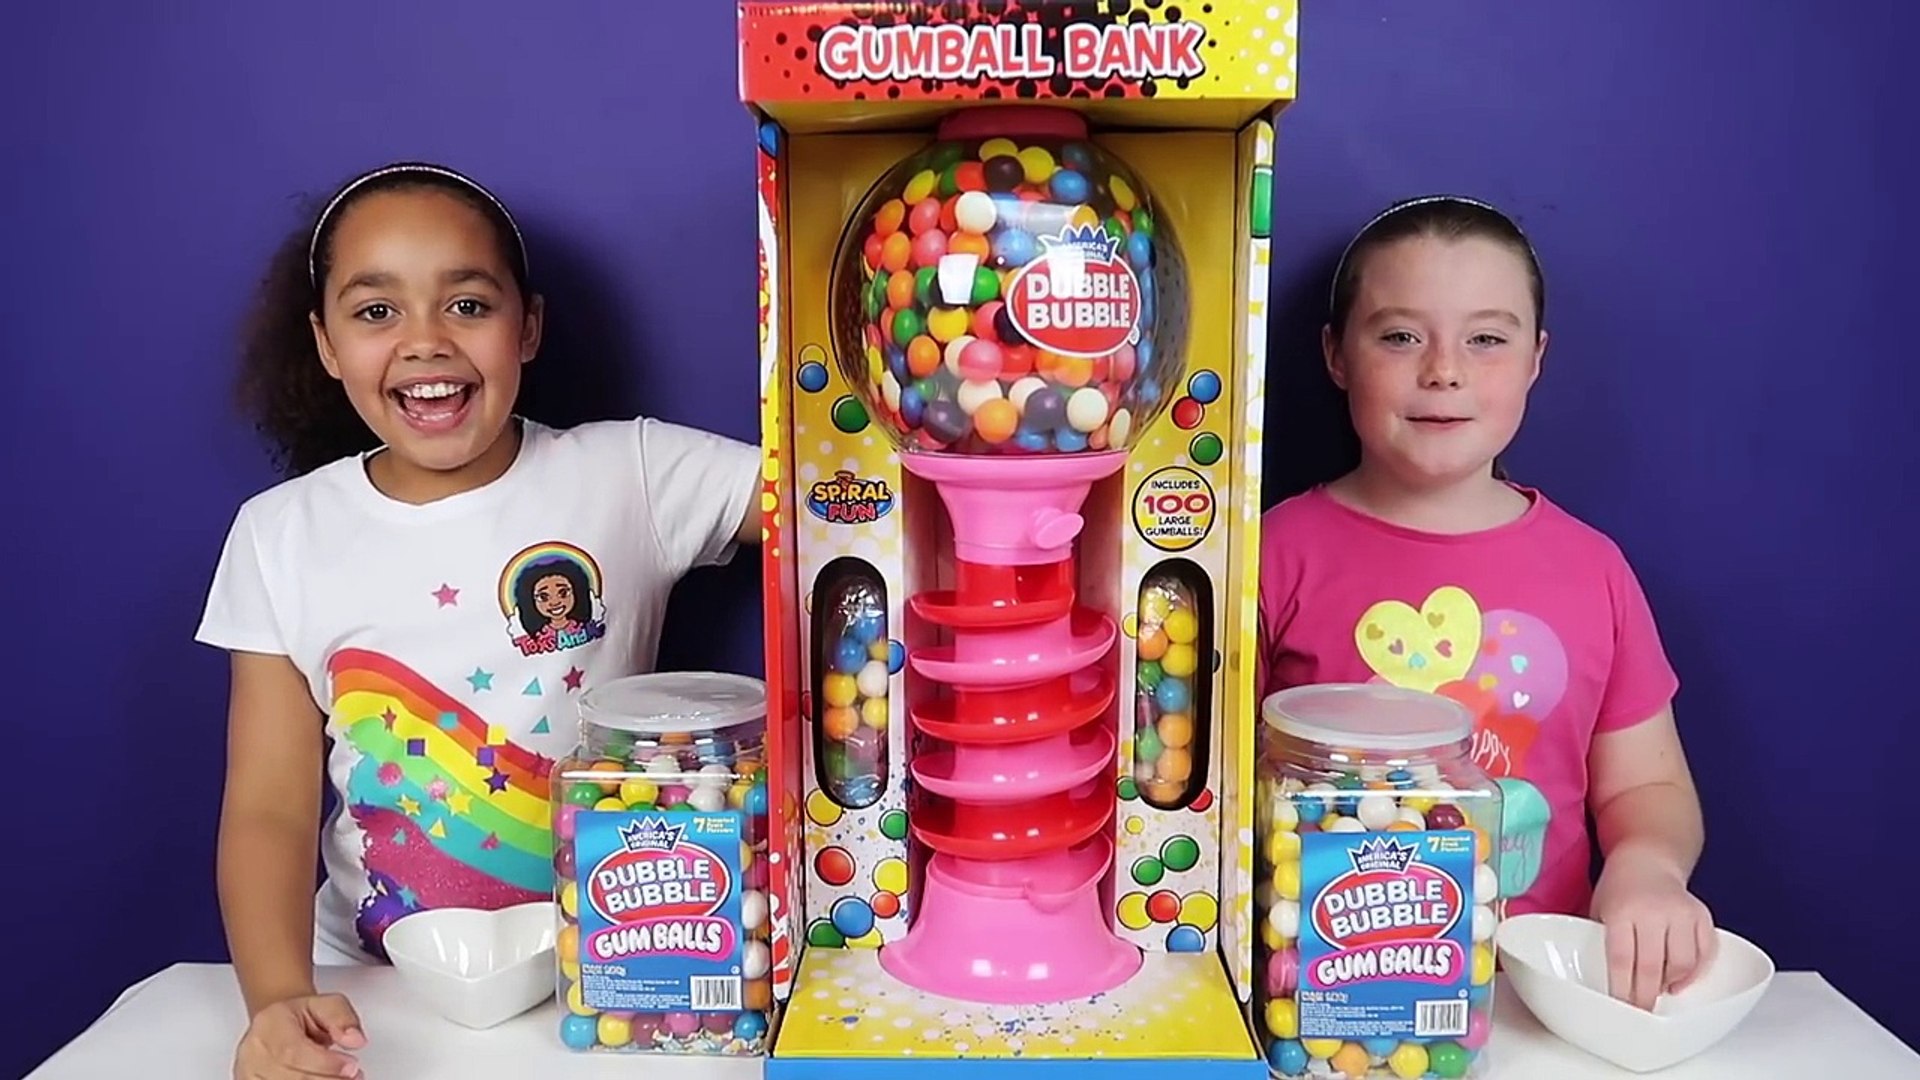 Giant Dubble Bubble Gumball Machine Bubble Gum Challenge SUPER GROSS! -  video Dailymotion